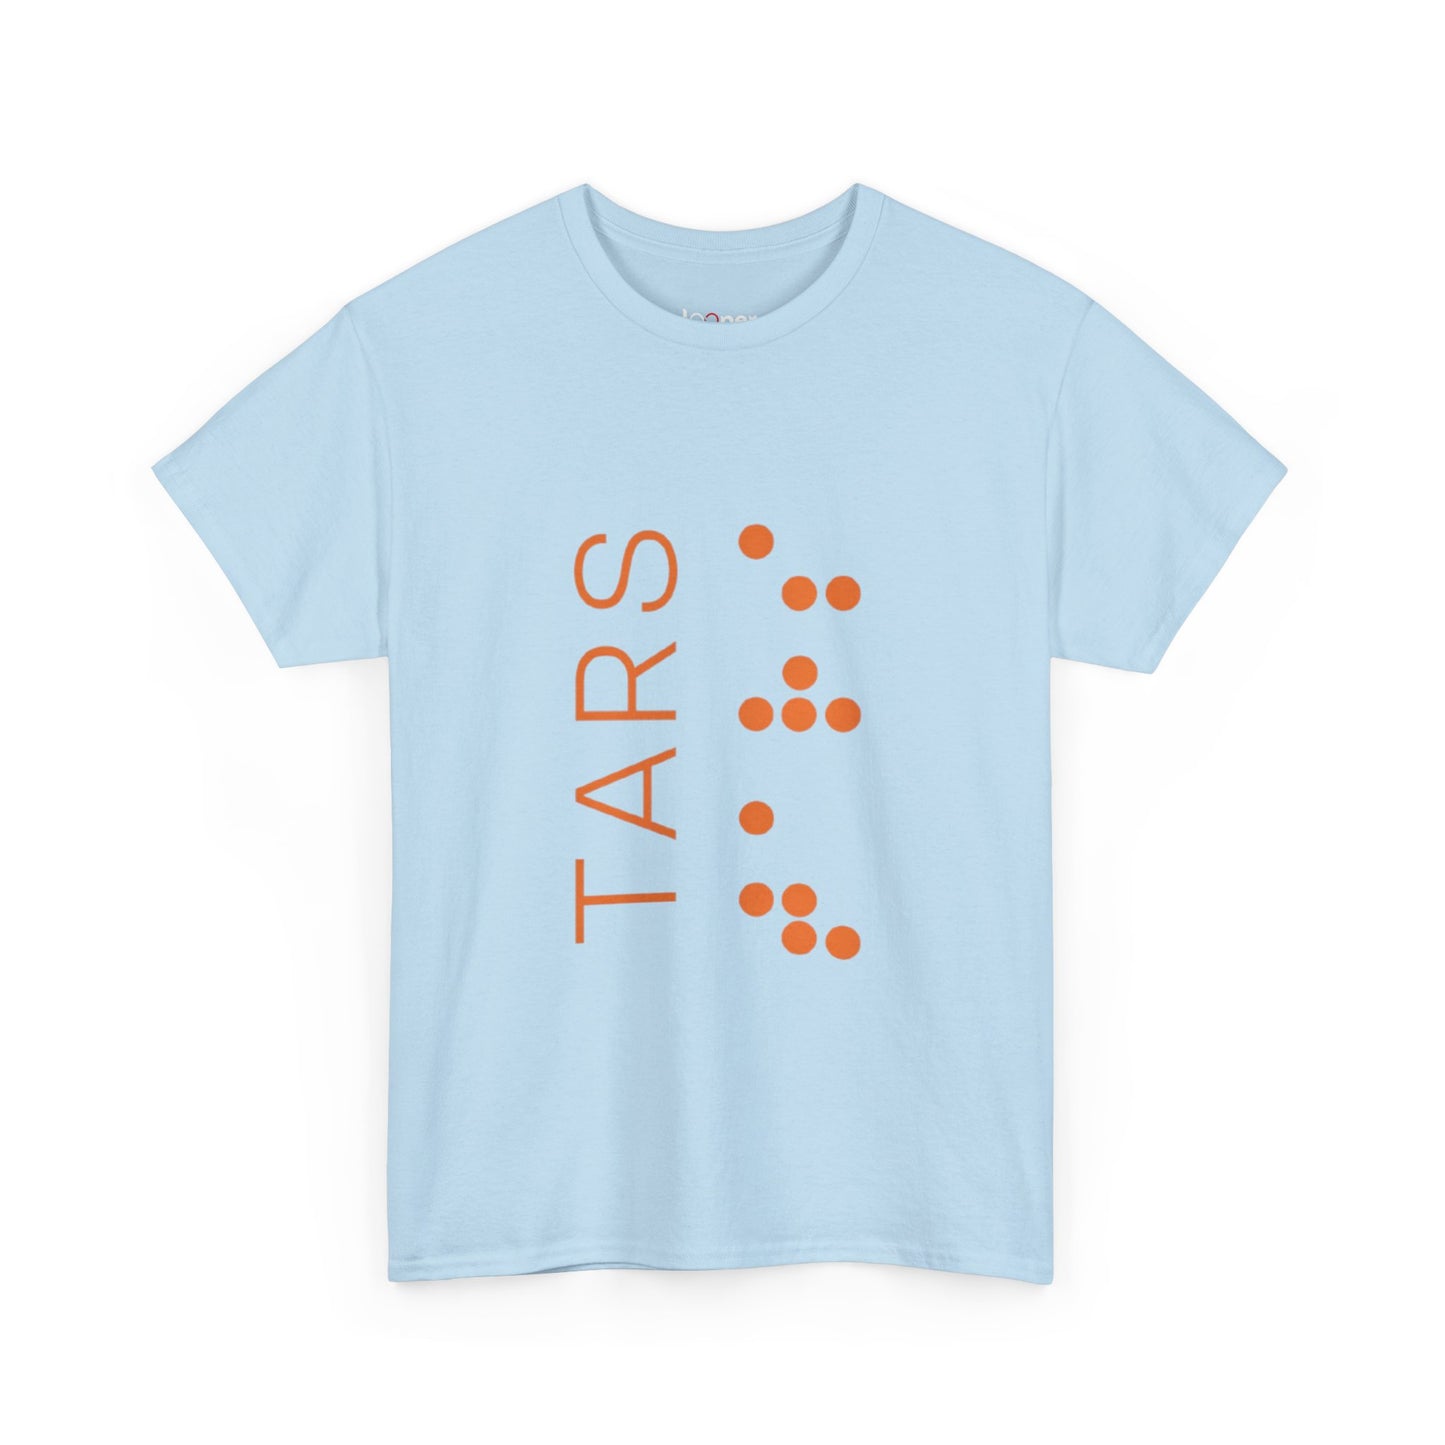 Interstellar - TARS Minimalist T-Shirt